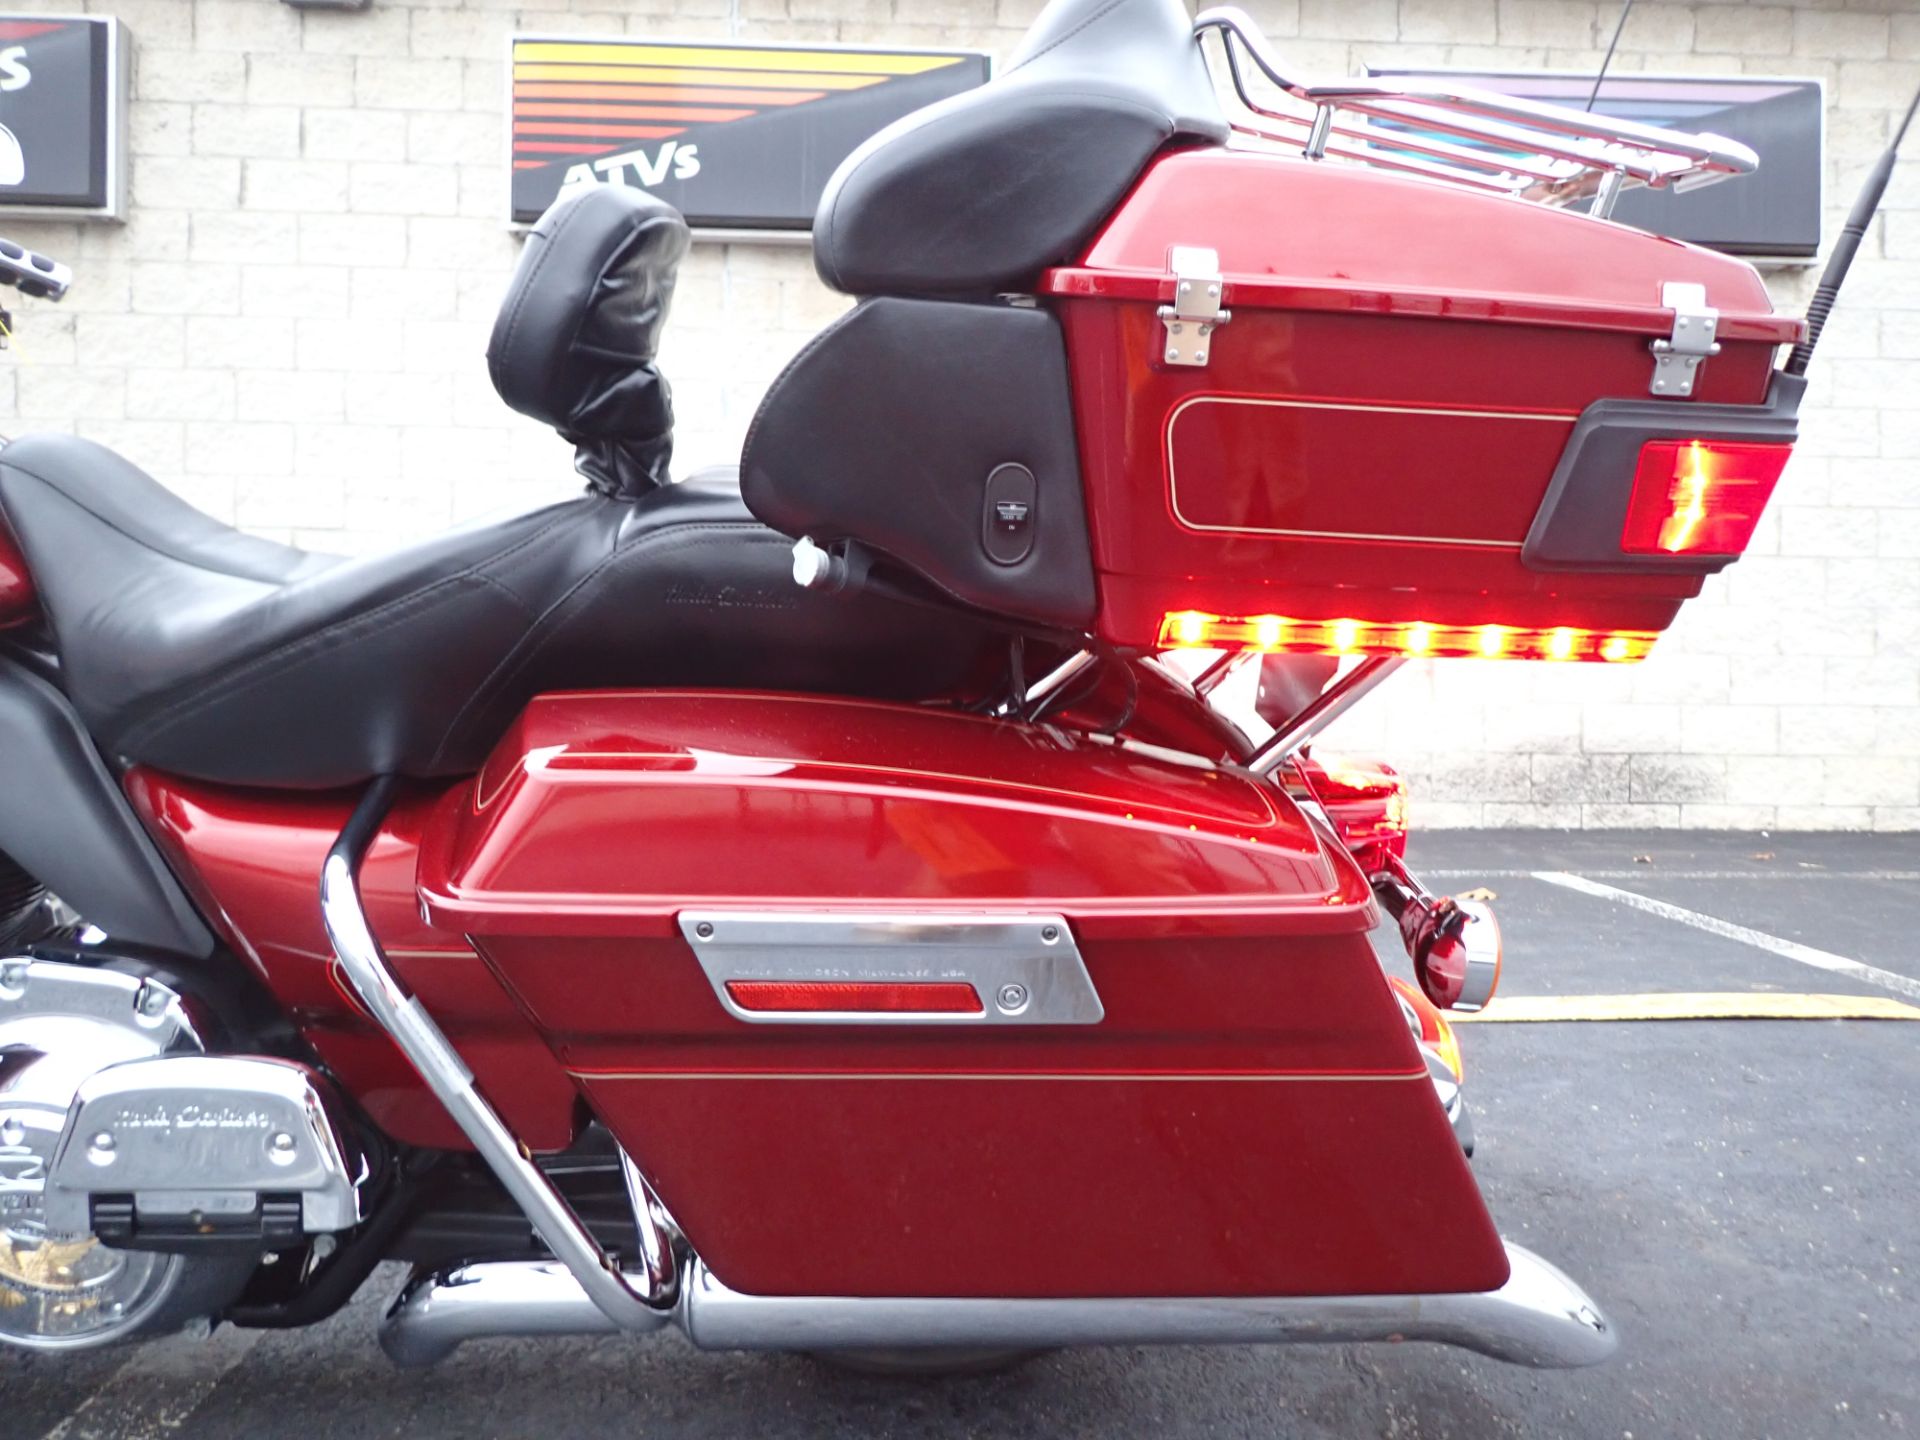 2009 Harley-Davidson Ultra Classic® Electra Glide® in Massillon, Ohio - Photo 7